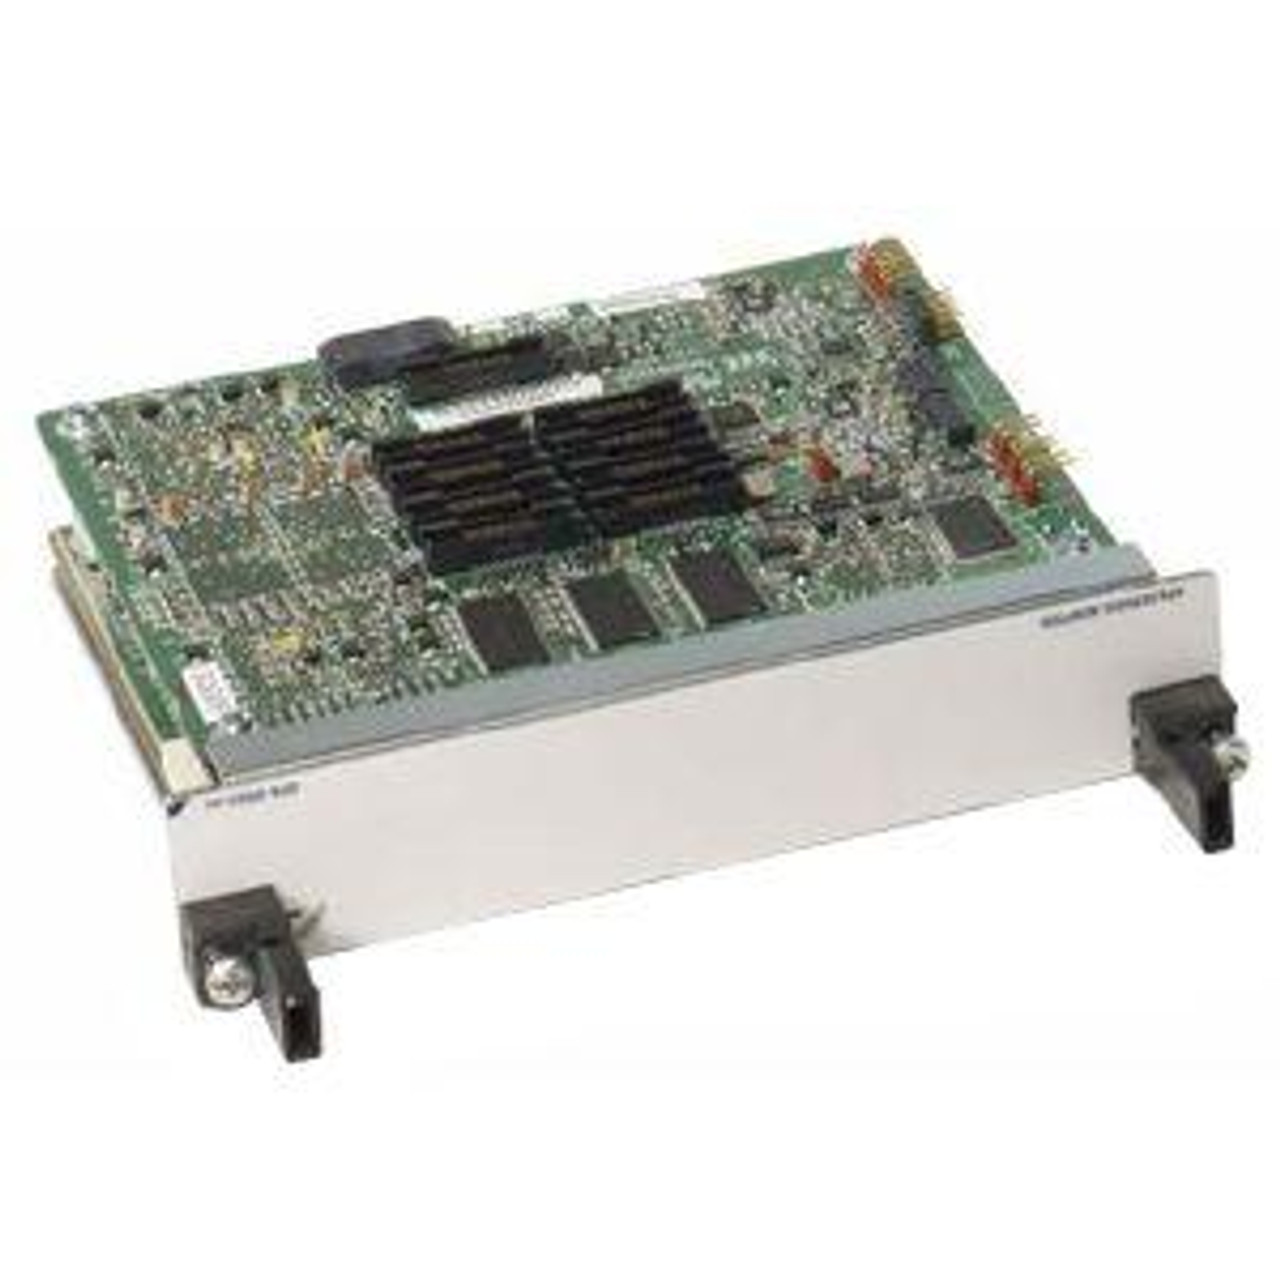 SPA-IPSEC-2G Cisco 7600 Series/Catalyst 6500 Series IPSec VPN Shared Port Adapter (Refurbished)